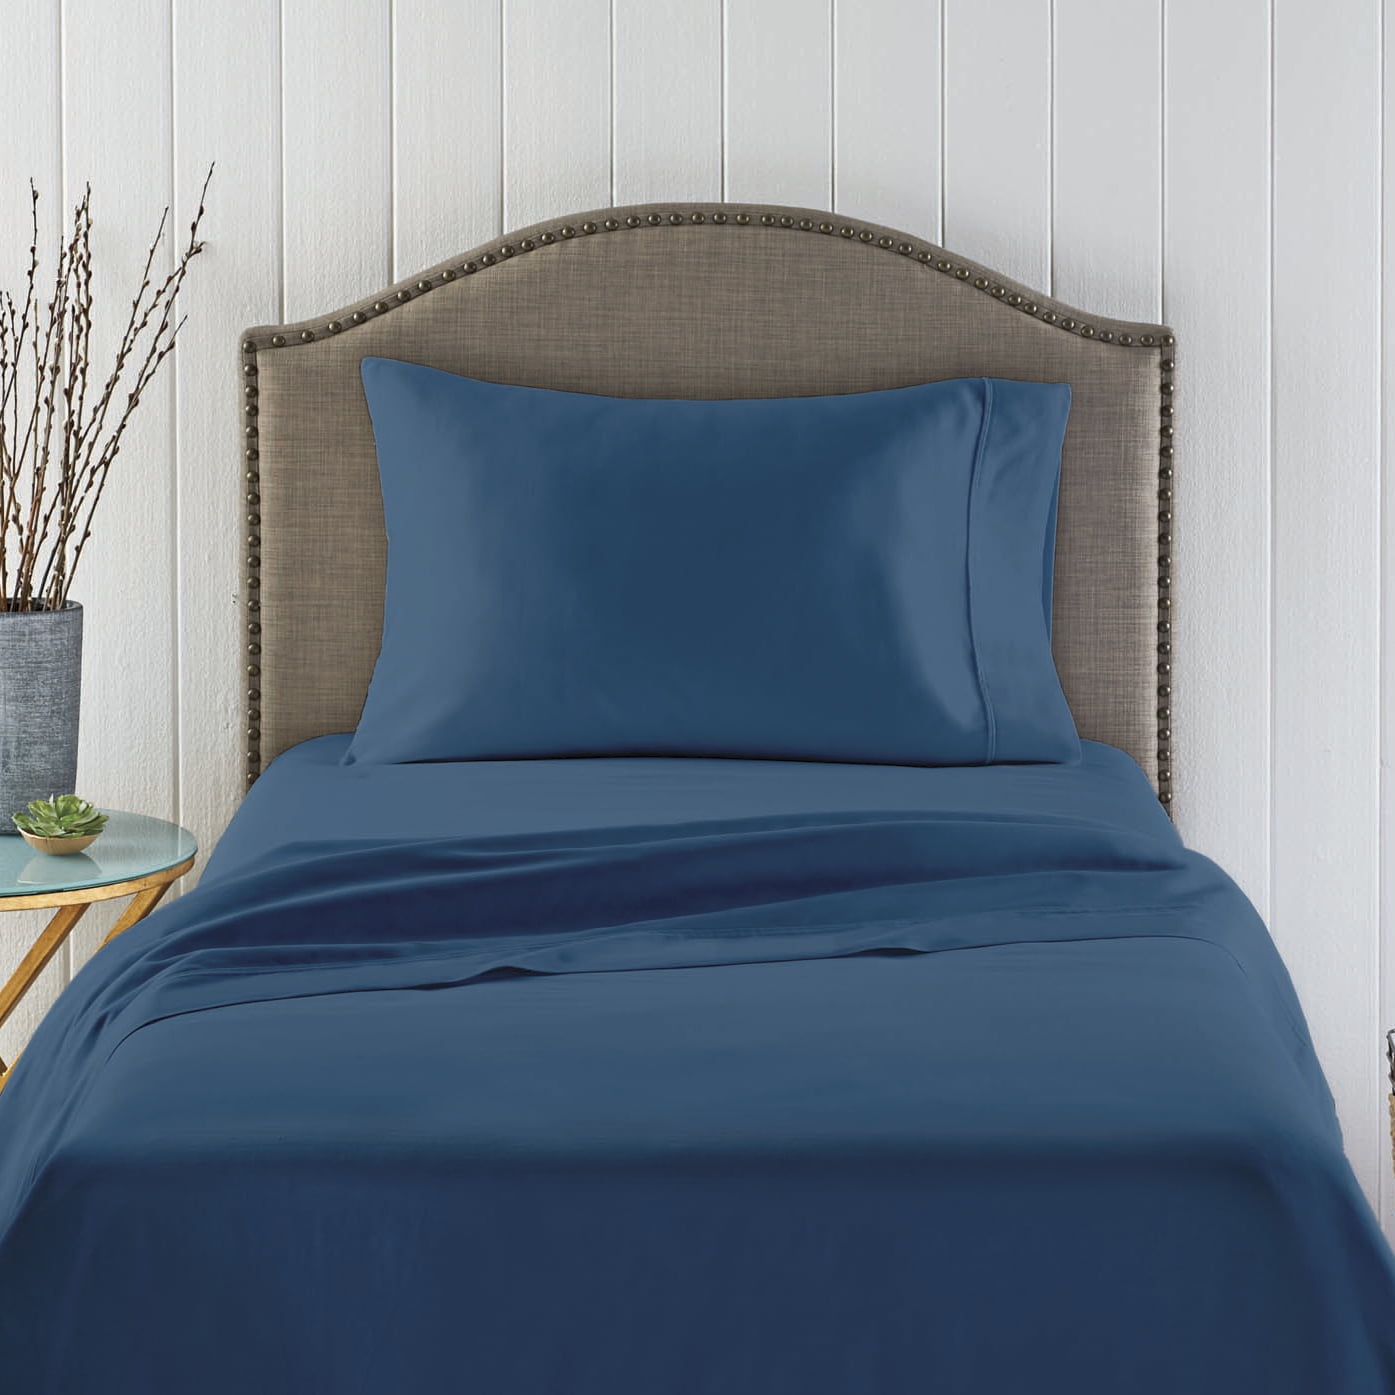 Better Homes & Gardens 100% Cotton Wrinkle Resistant Bedding Sheet Set Full 